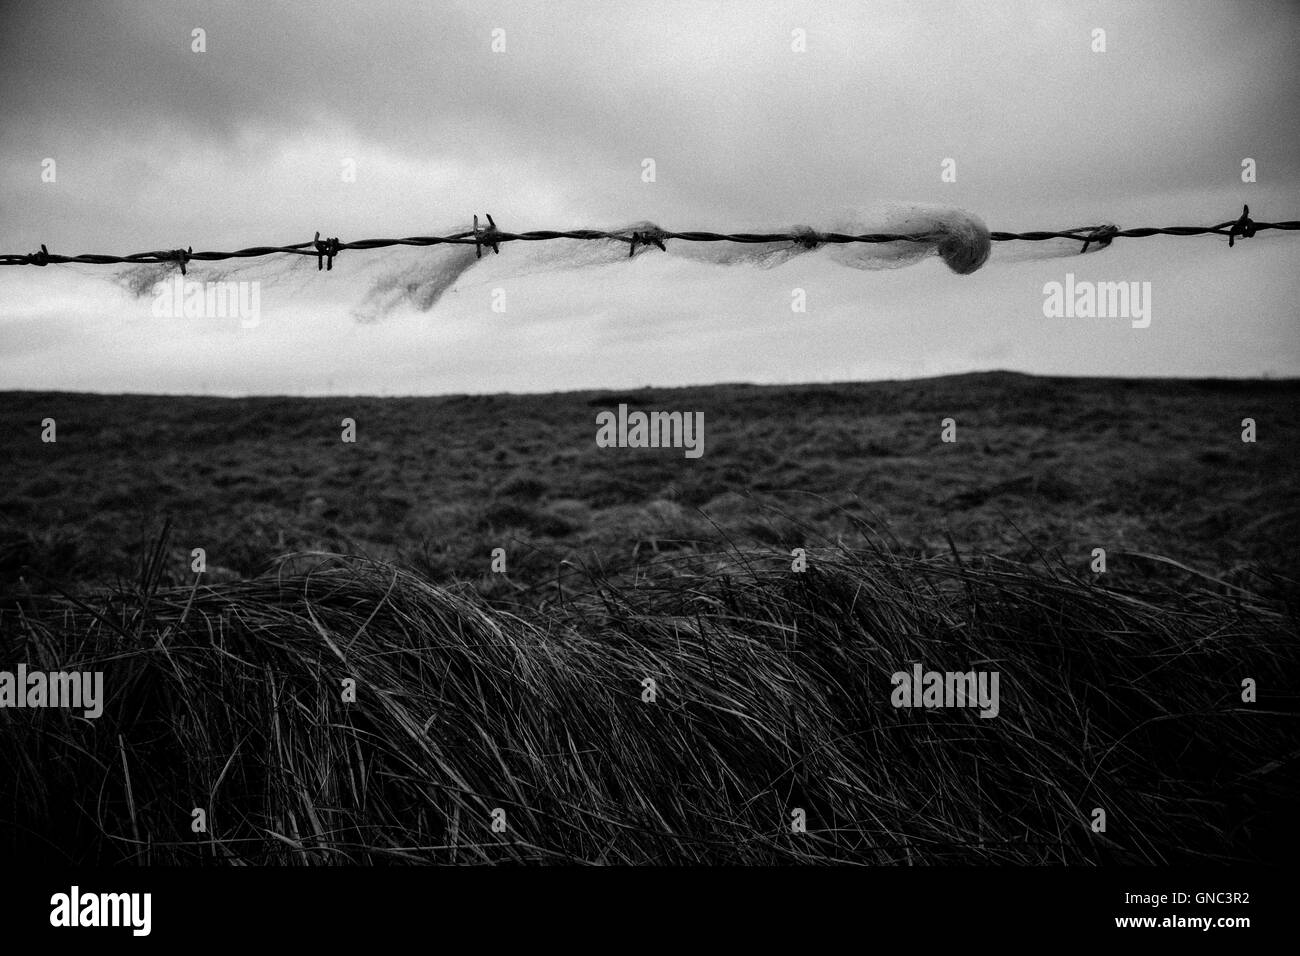 La lana catturato sul filo spinato con il paesaggio rurale in background sul giorno nuvoloso, Irlanda Foto Stock